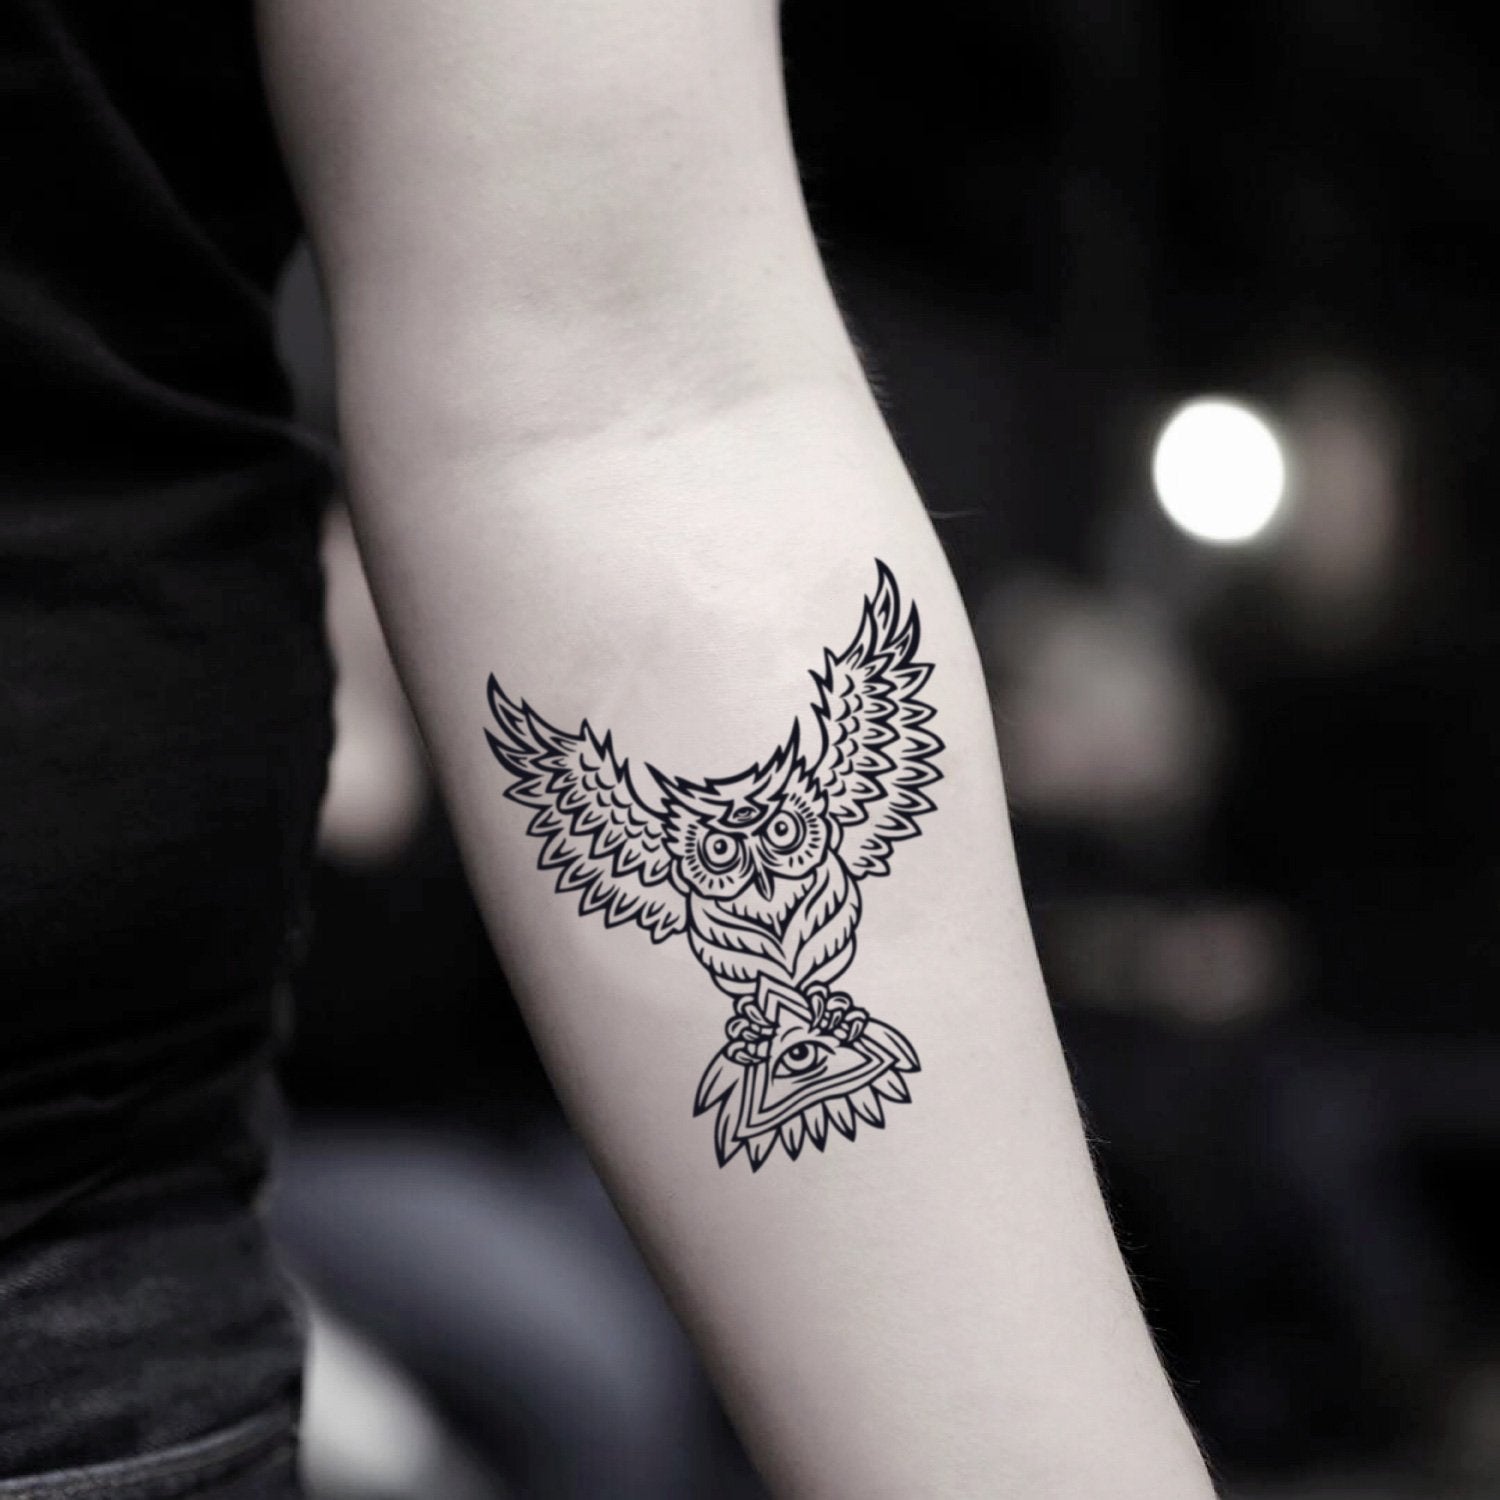 fake small illuminati owl animal temporary tattoo sticker design idea on inner arm